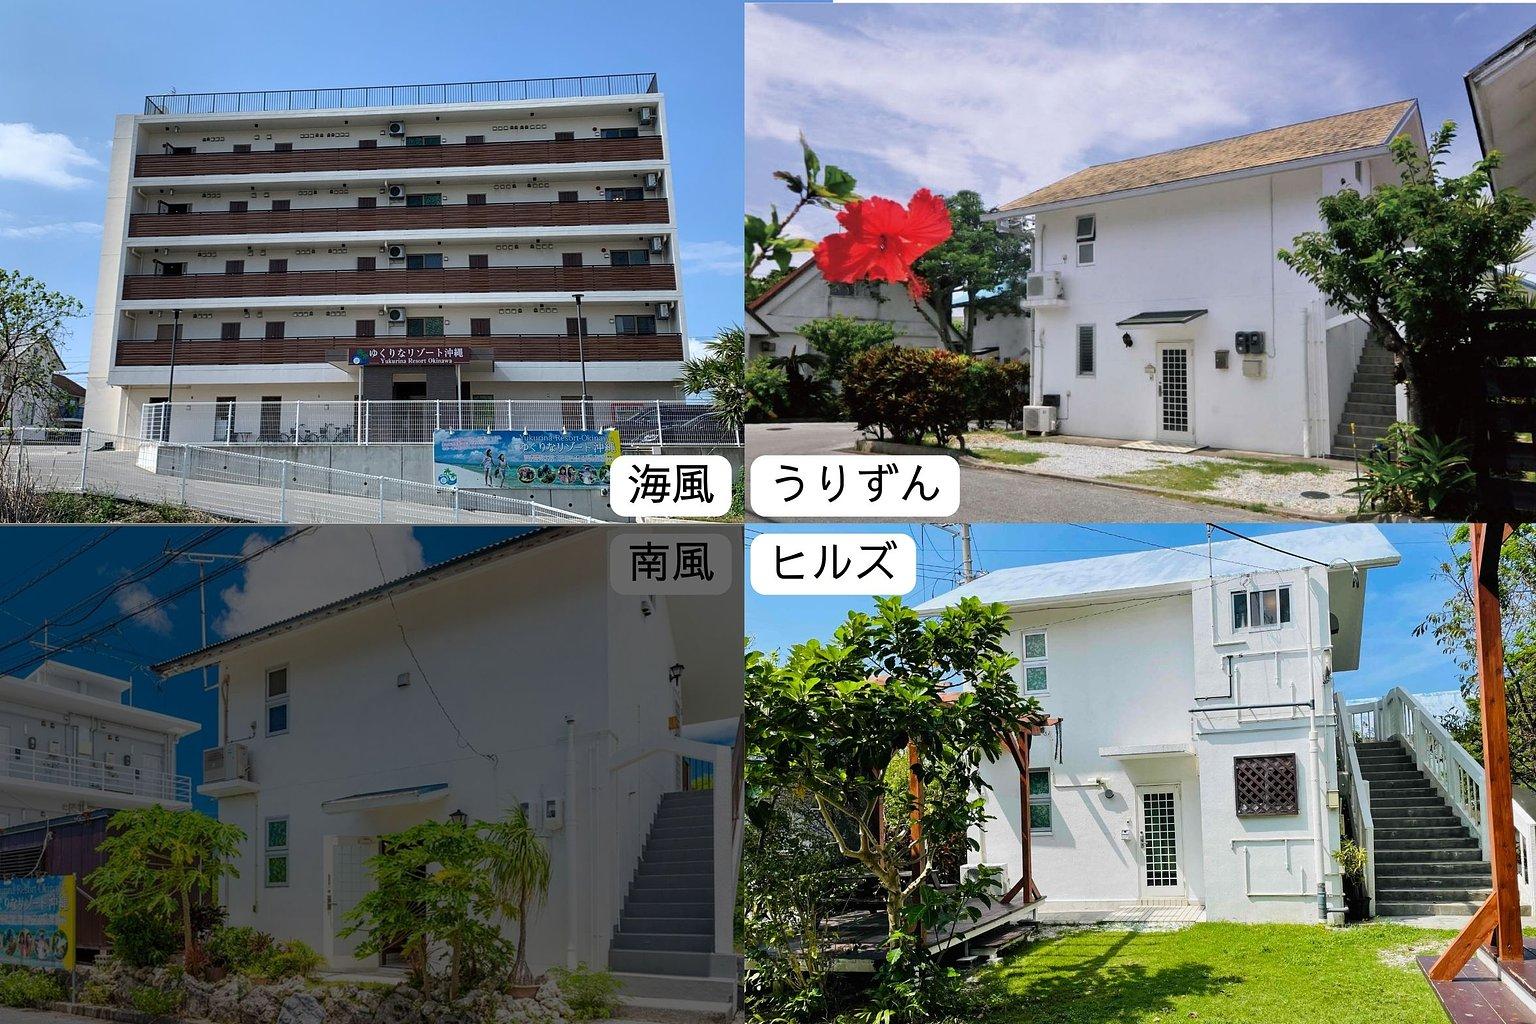 Yukurina Resort Okinawa